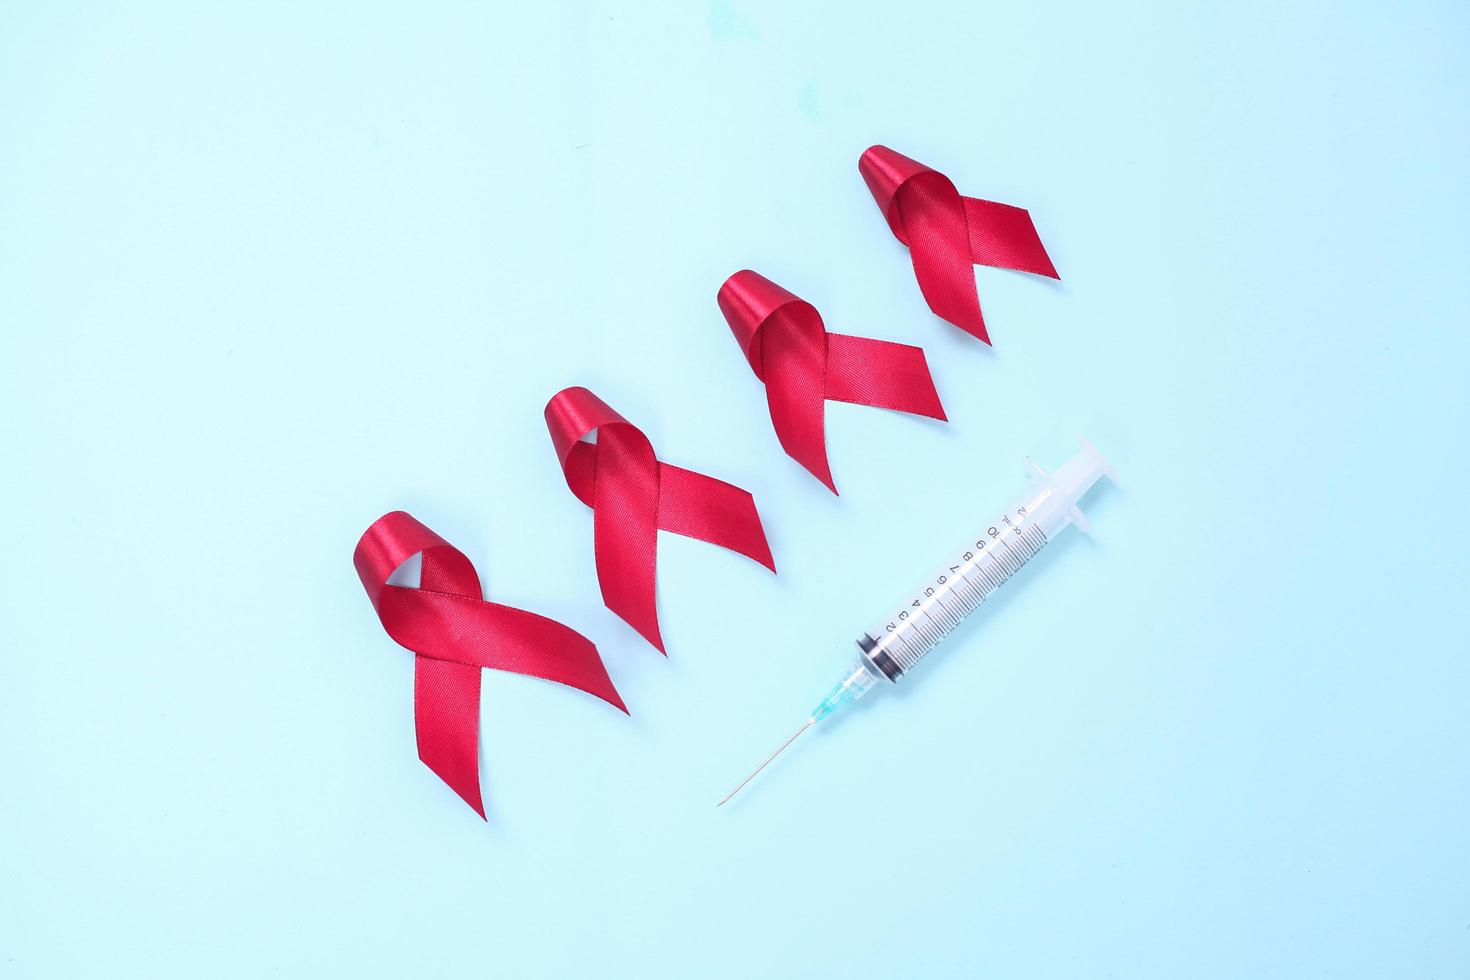 cinta roja compuesta de símbolos de sida contra el virus vih aislado sobre fondo azul foto